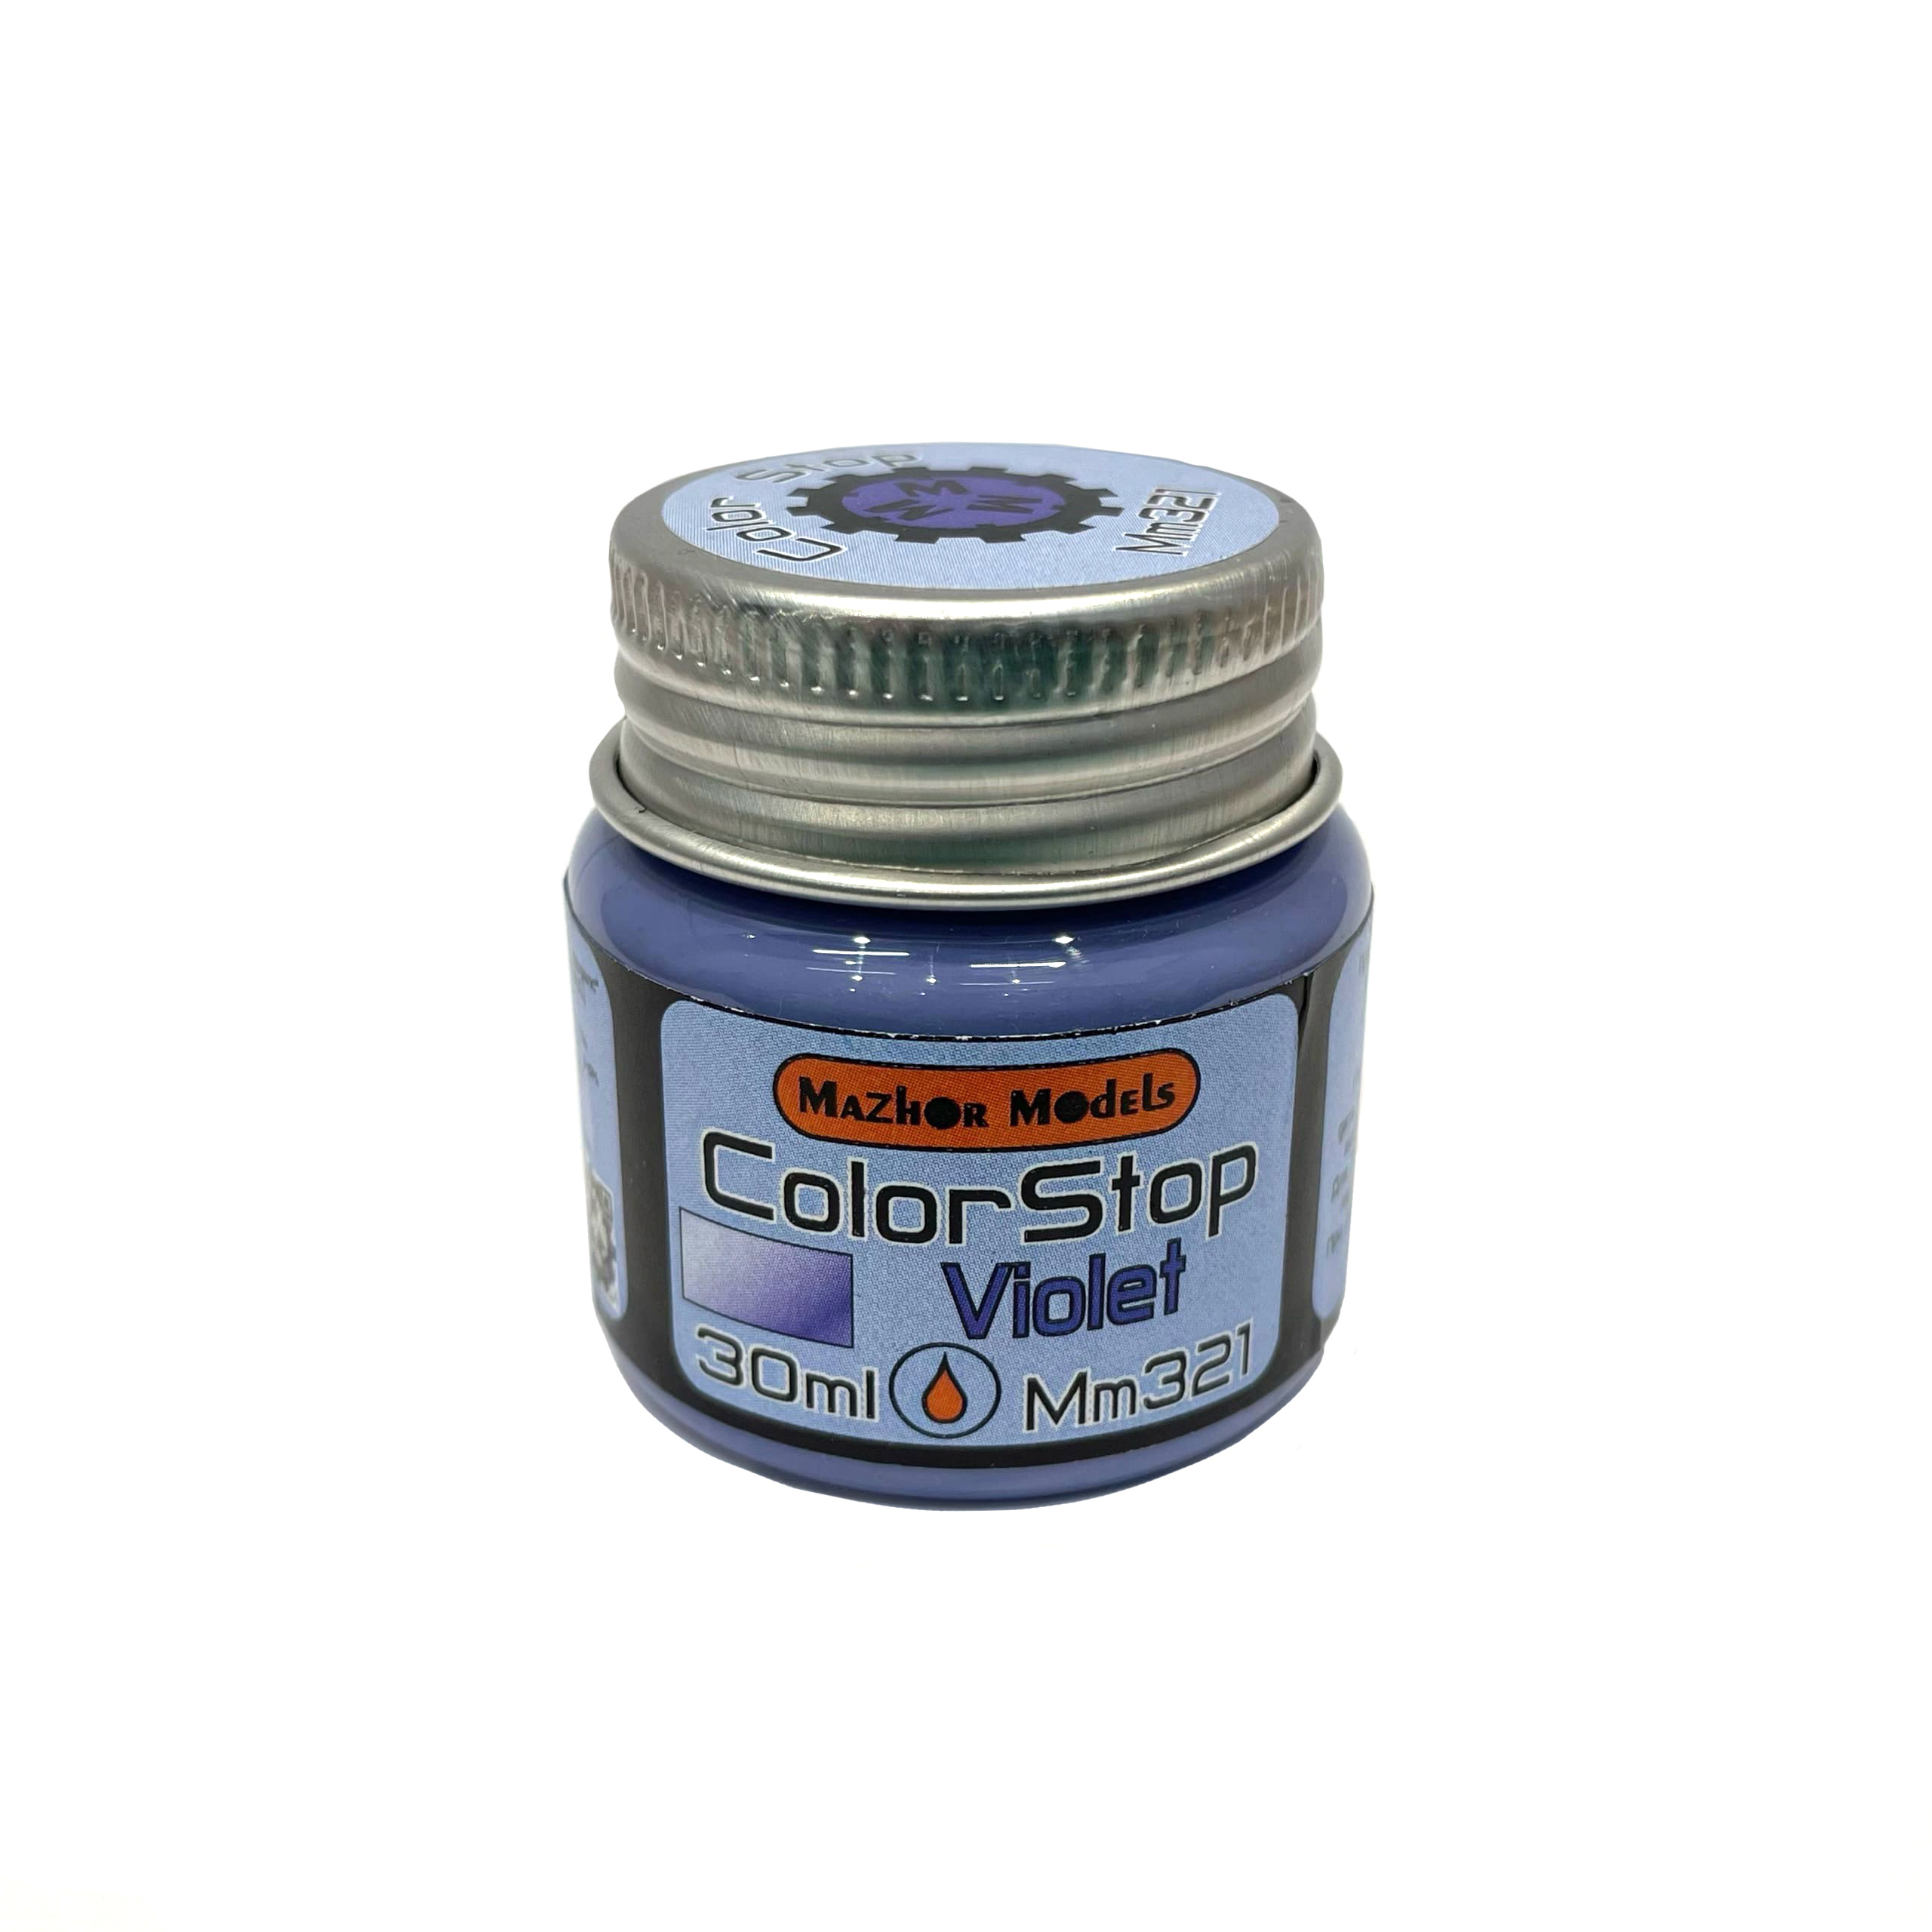 MM321 Major Models Liquid mask (Color stop) purple 30 ml